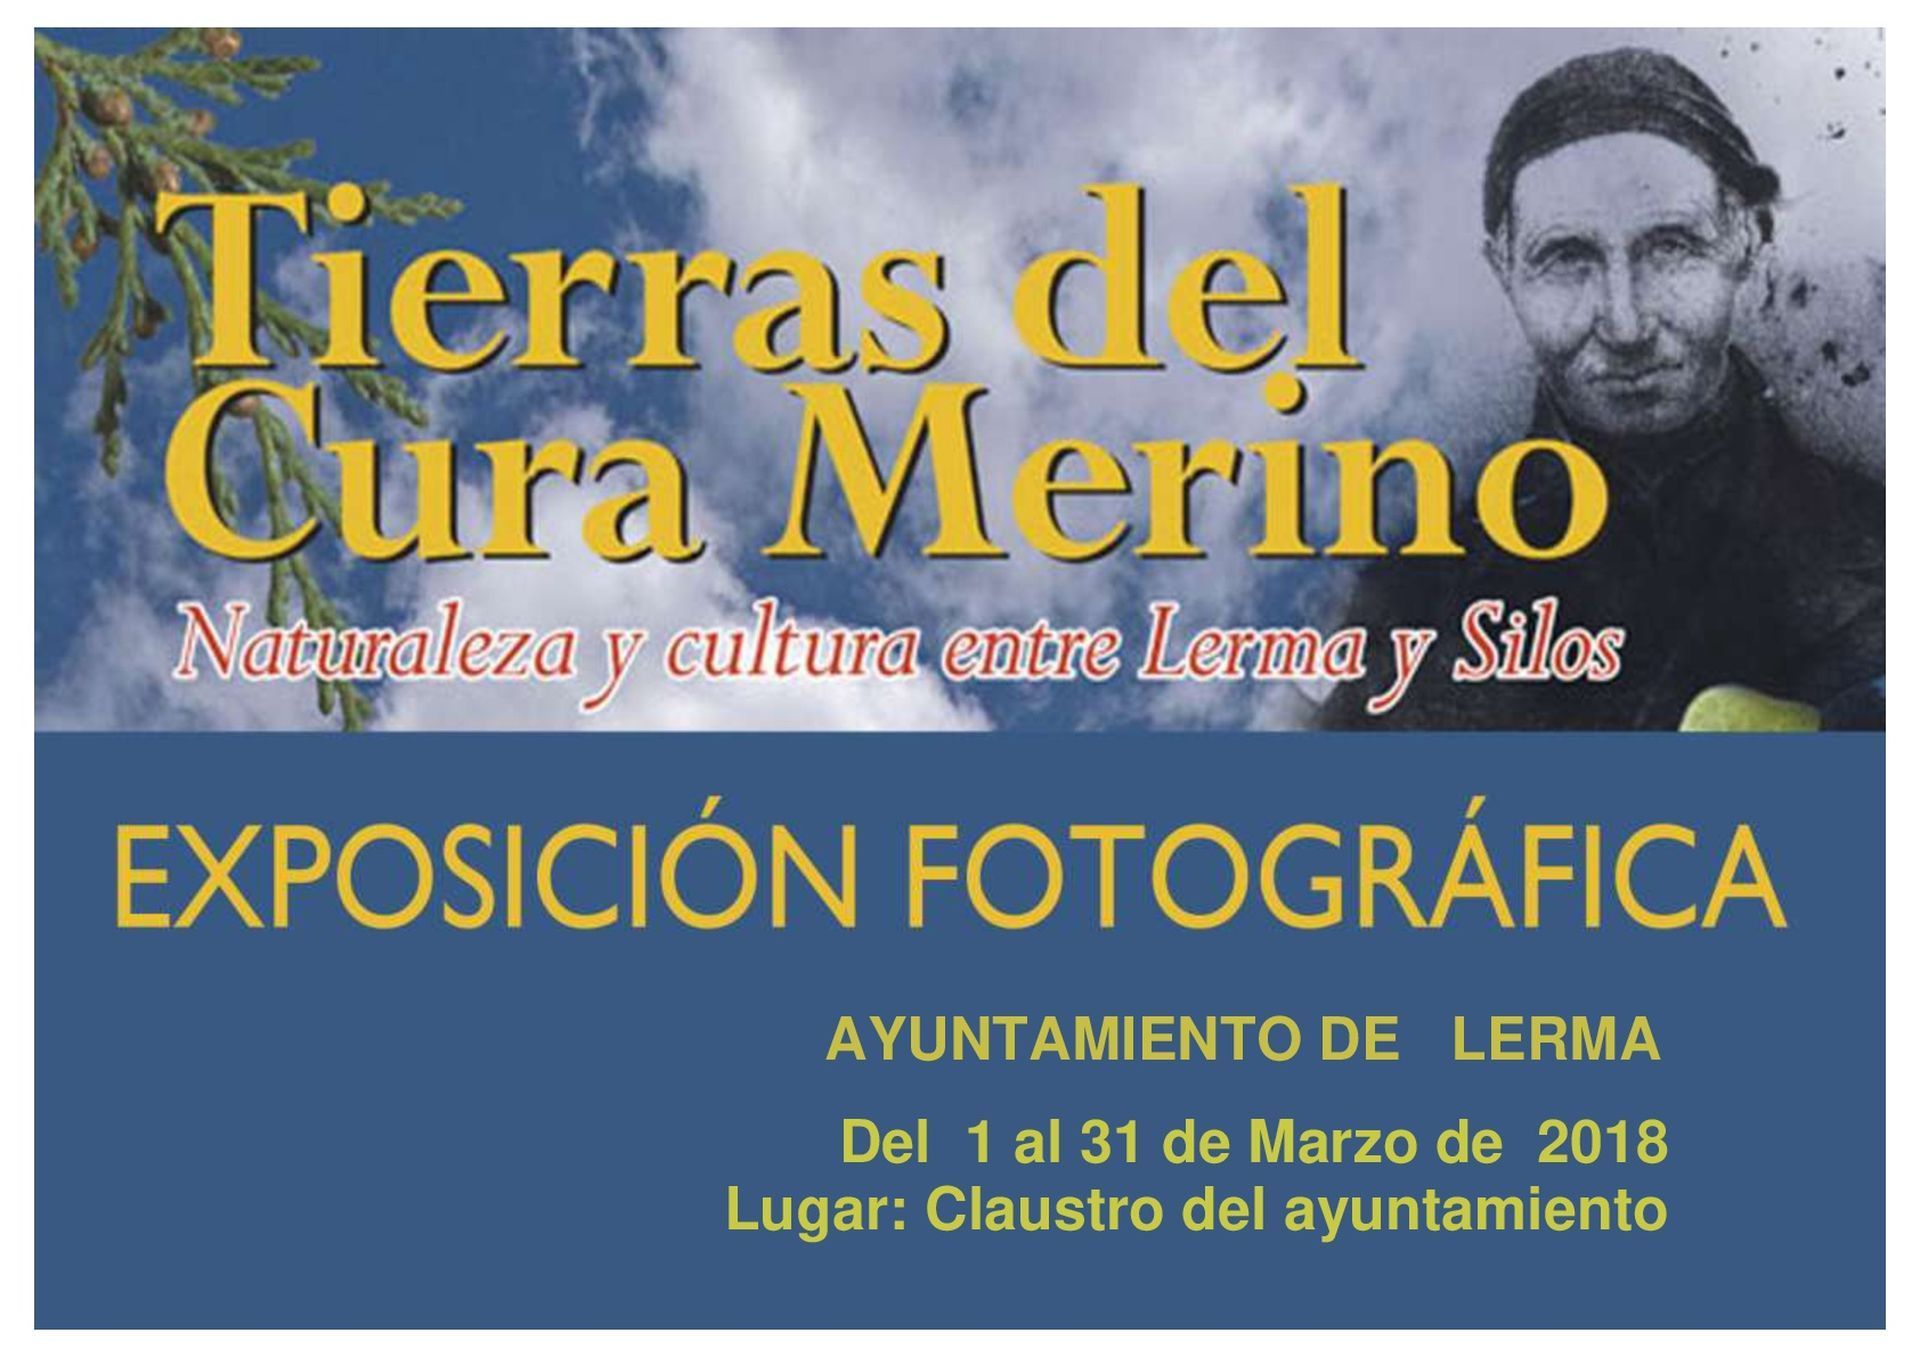 Exposición Fotográfica "Tierras del Cura Merino"